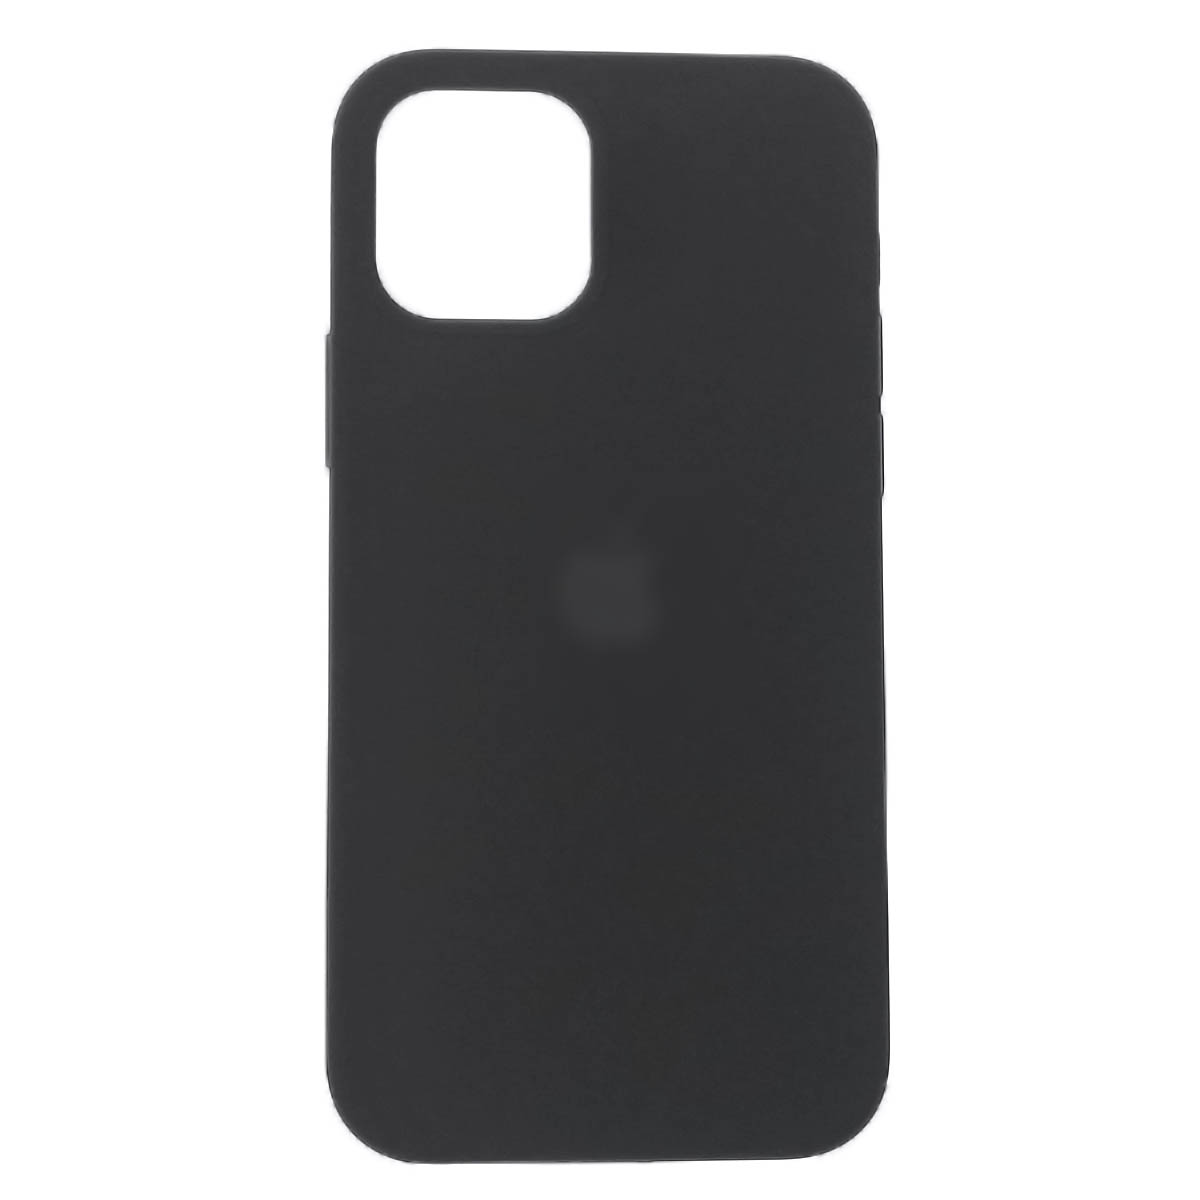 Чехол накладка Silicon Case для APPLE iPhone 12, iPhone 12 Pro, силикон, бархат, цвет черный